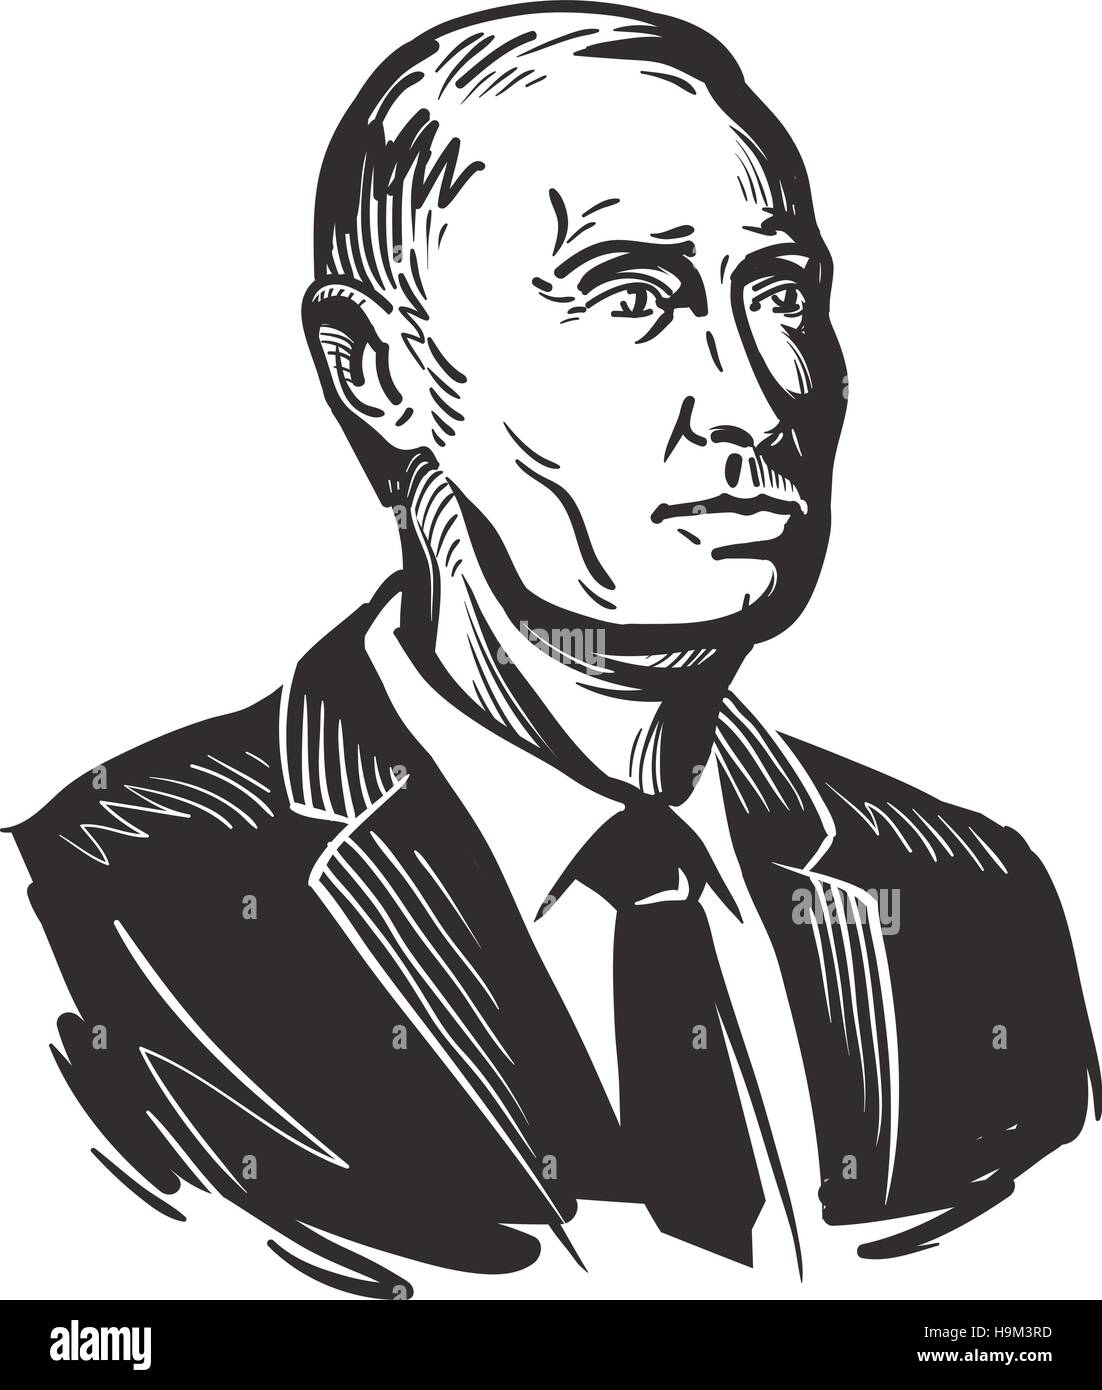 Poutine, Président de la Fédération de Russie. Vector illustration Illustration de Vecteur